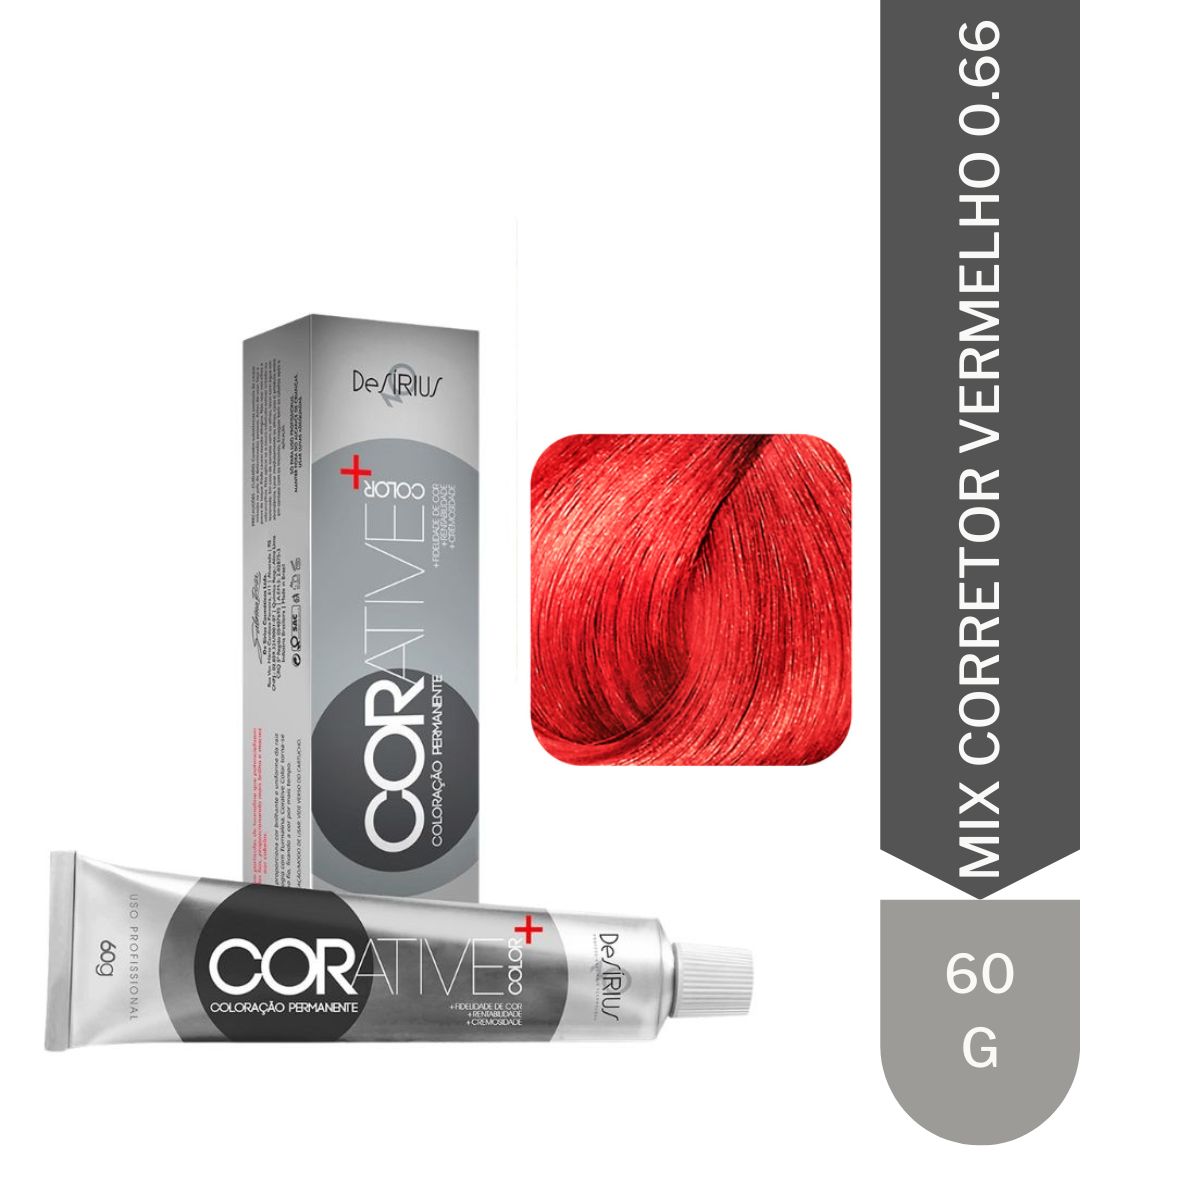 Corative Color 0.66 Mix Corretor Vermelho 60g